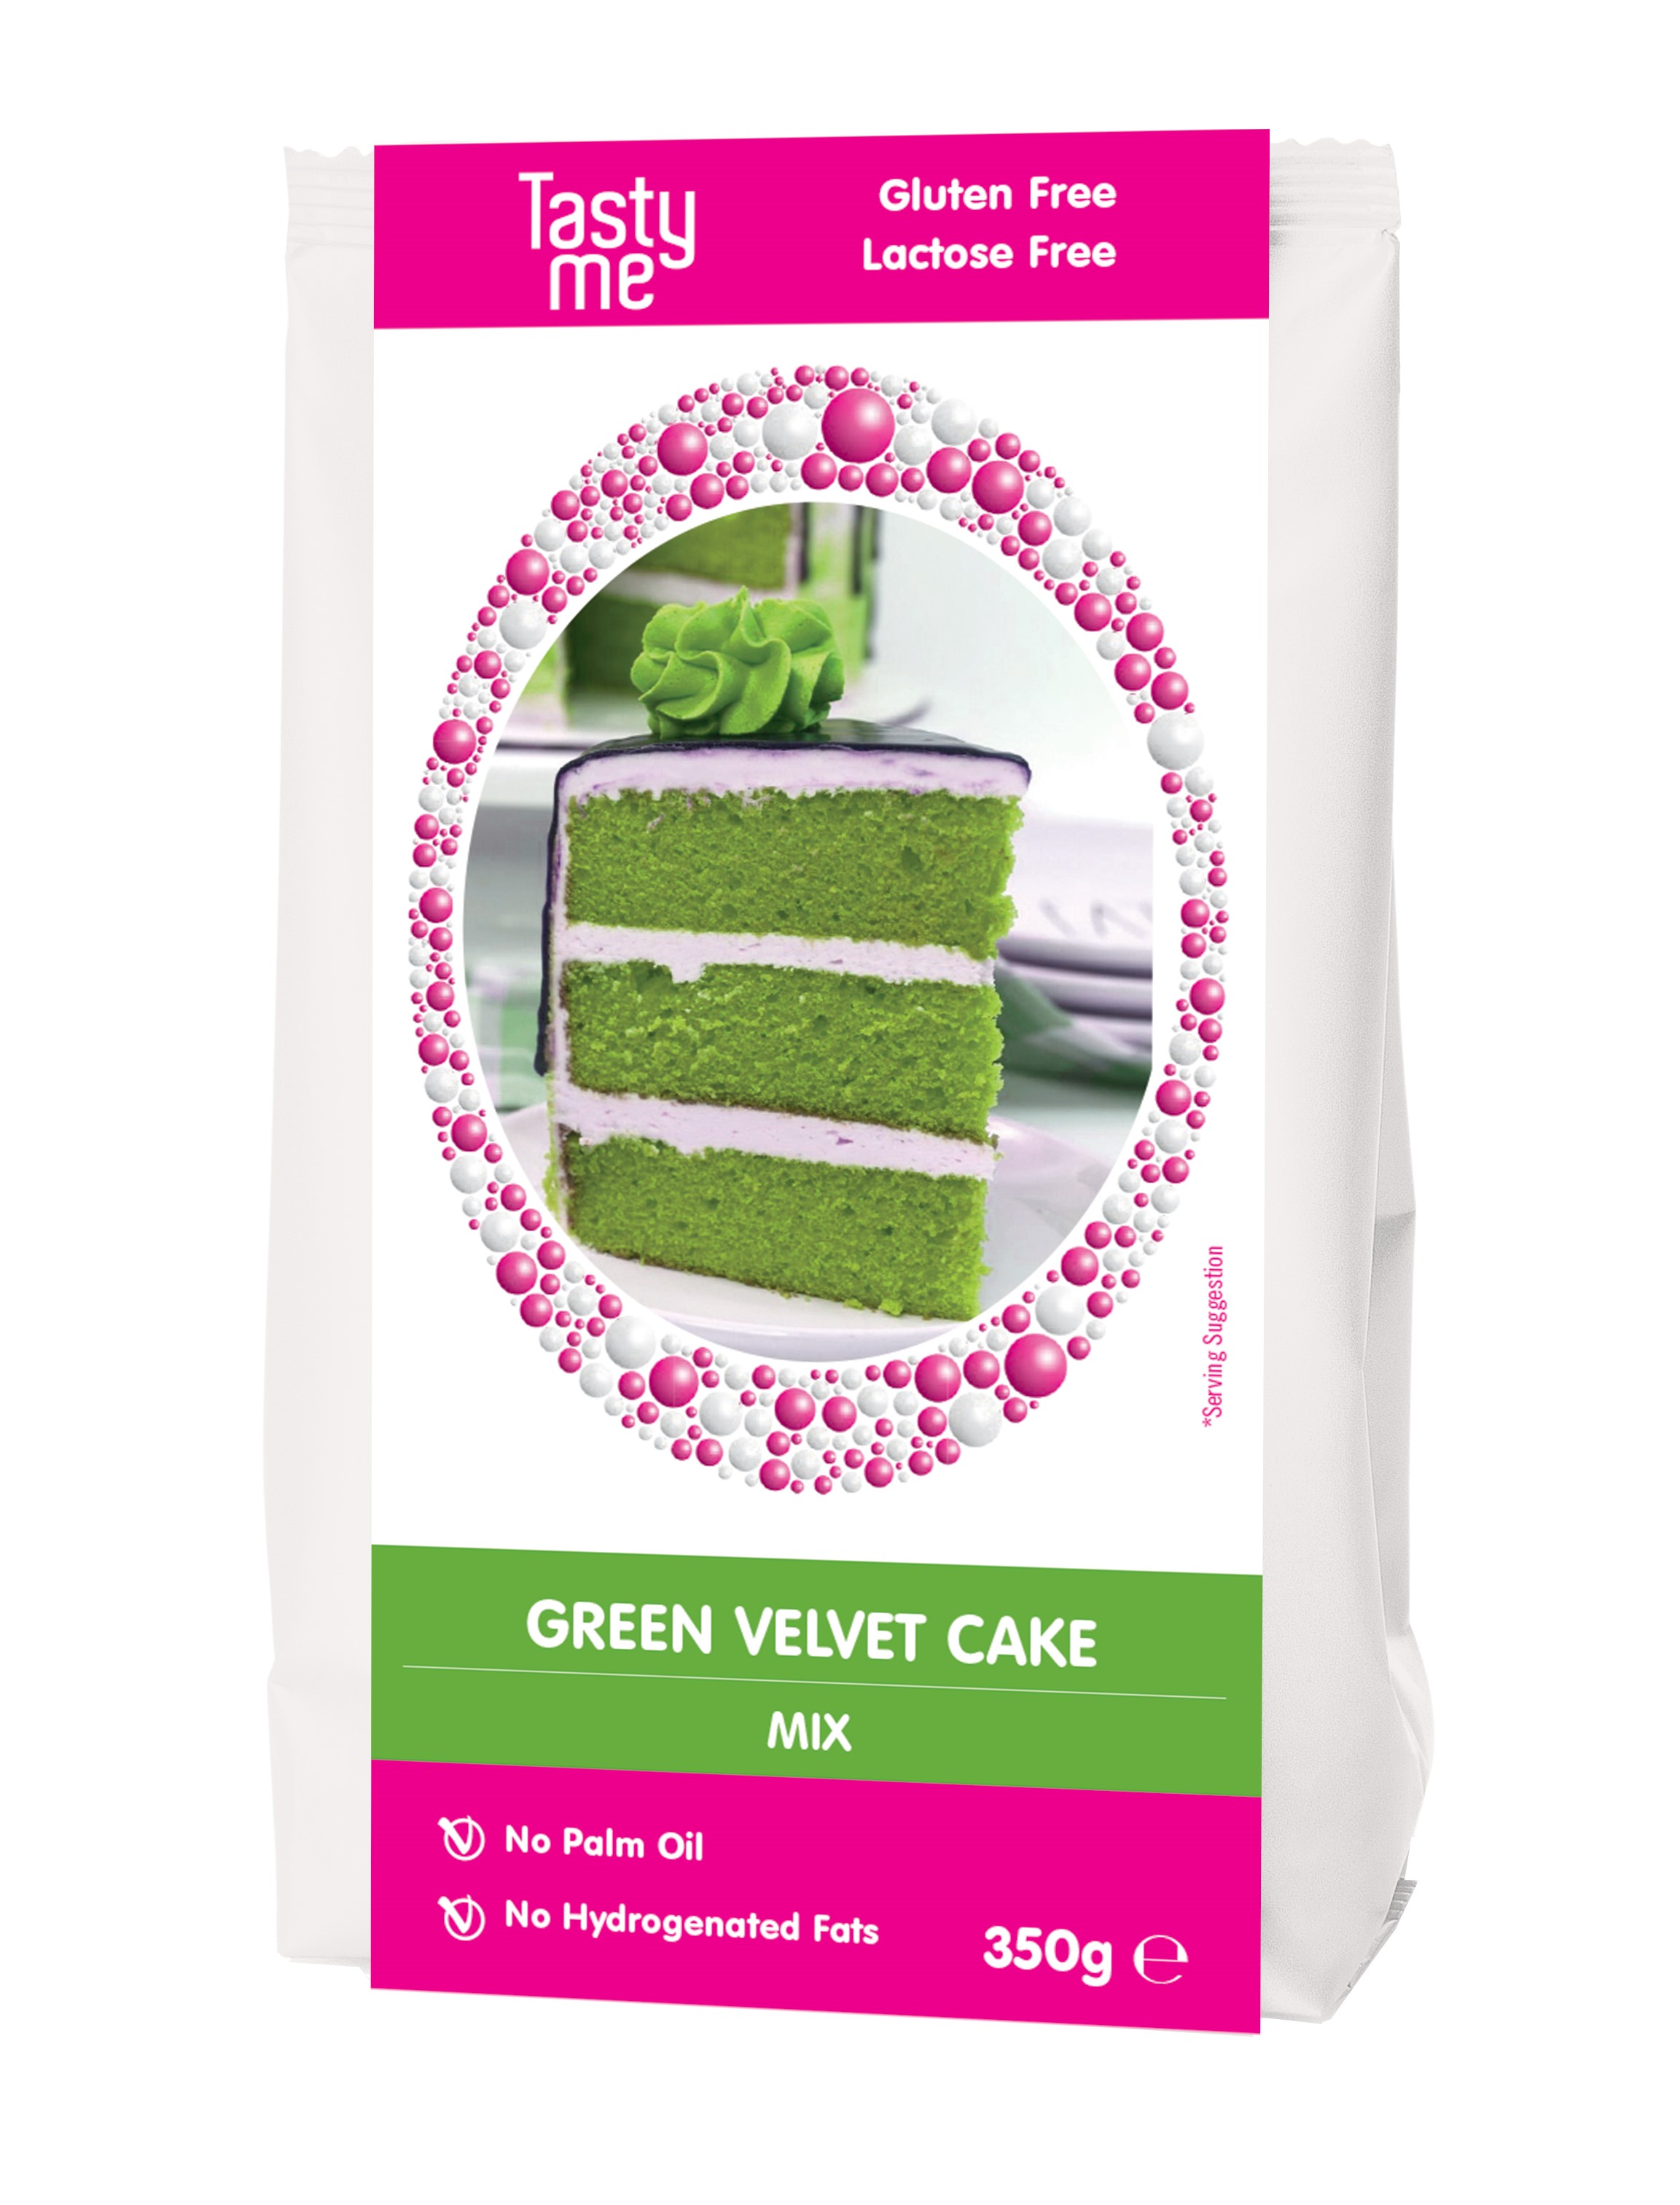 Green velvet cake mix 350g - gluten-free